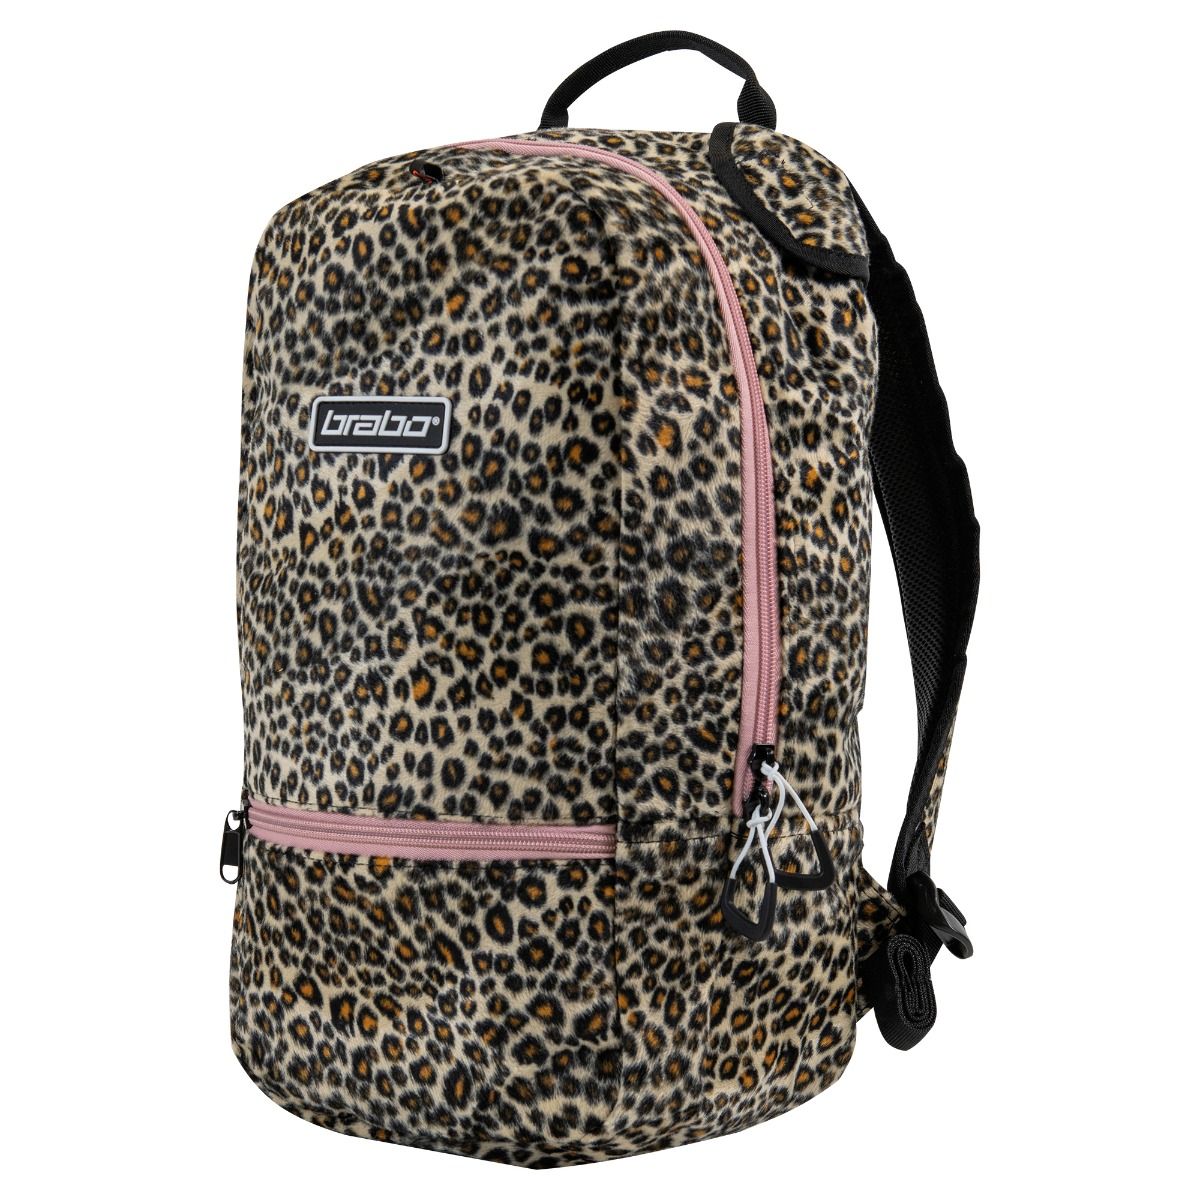 Brabo Fun Leopard Backpack